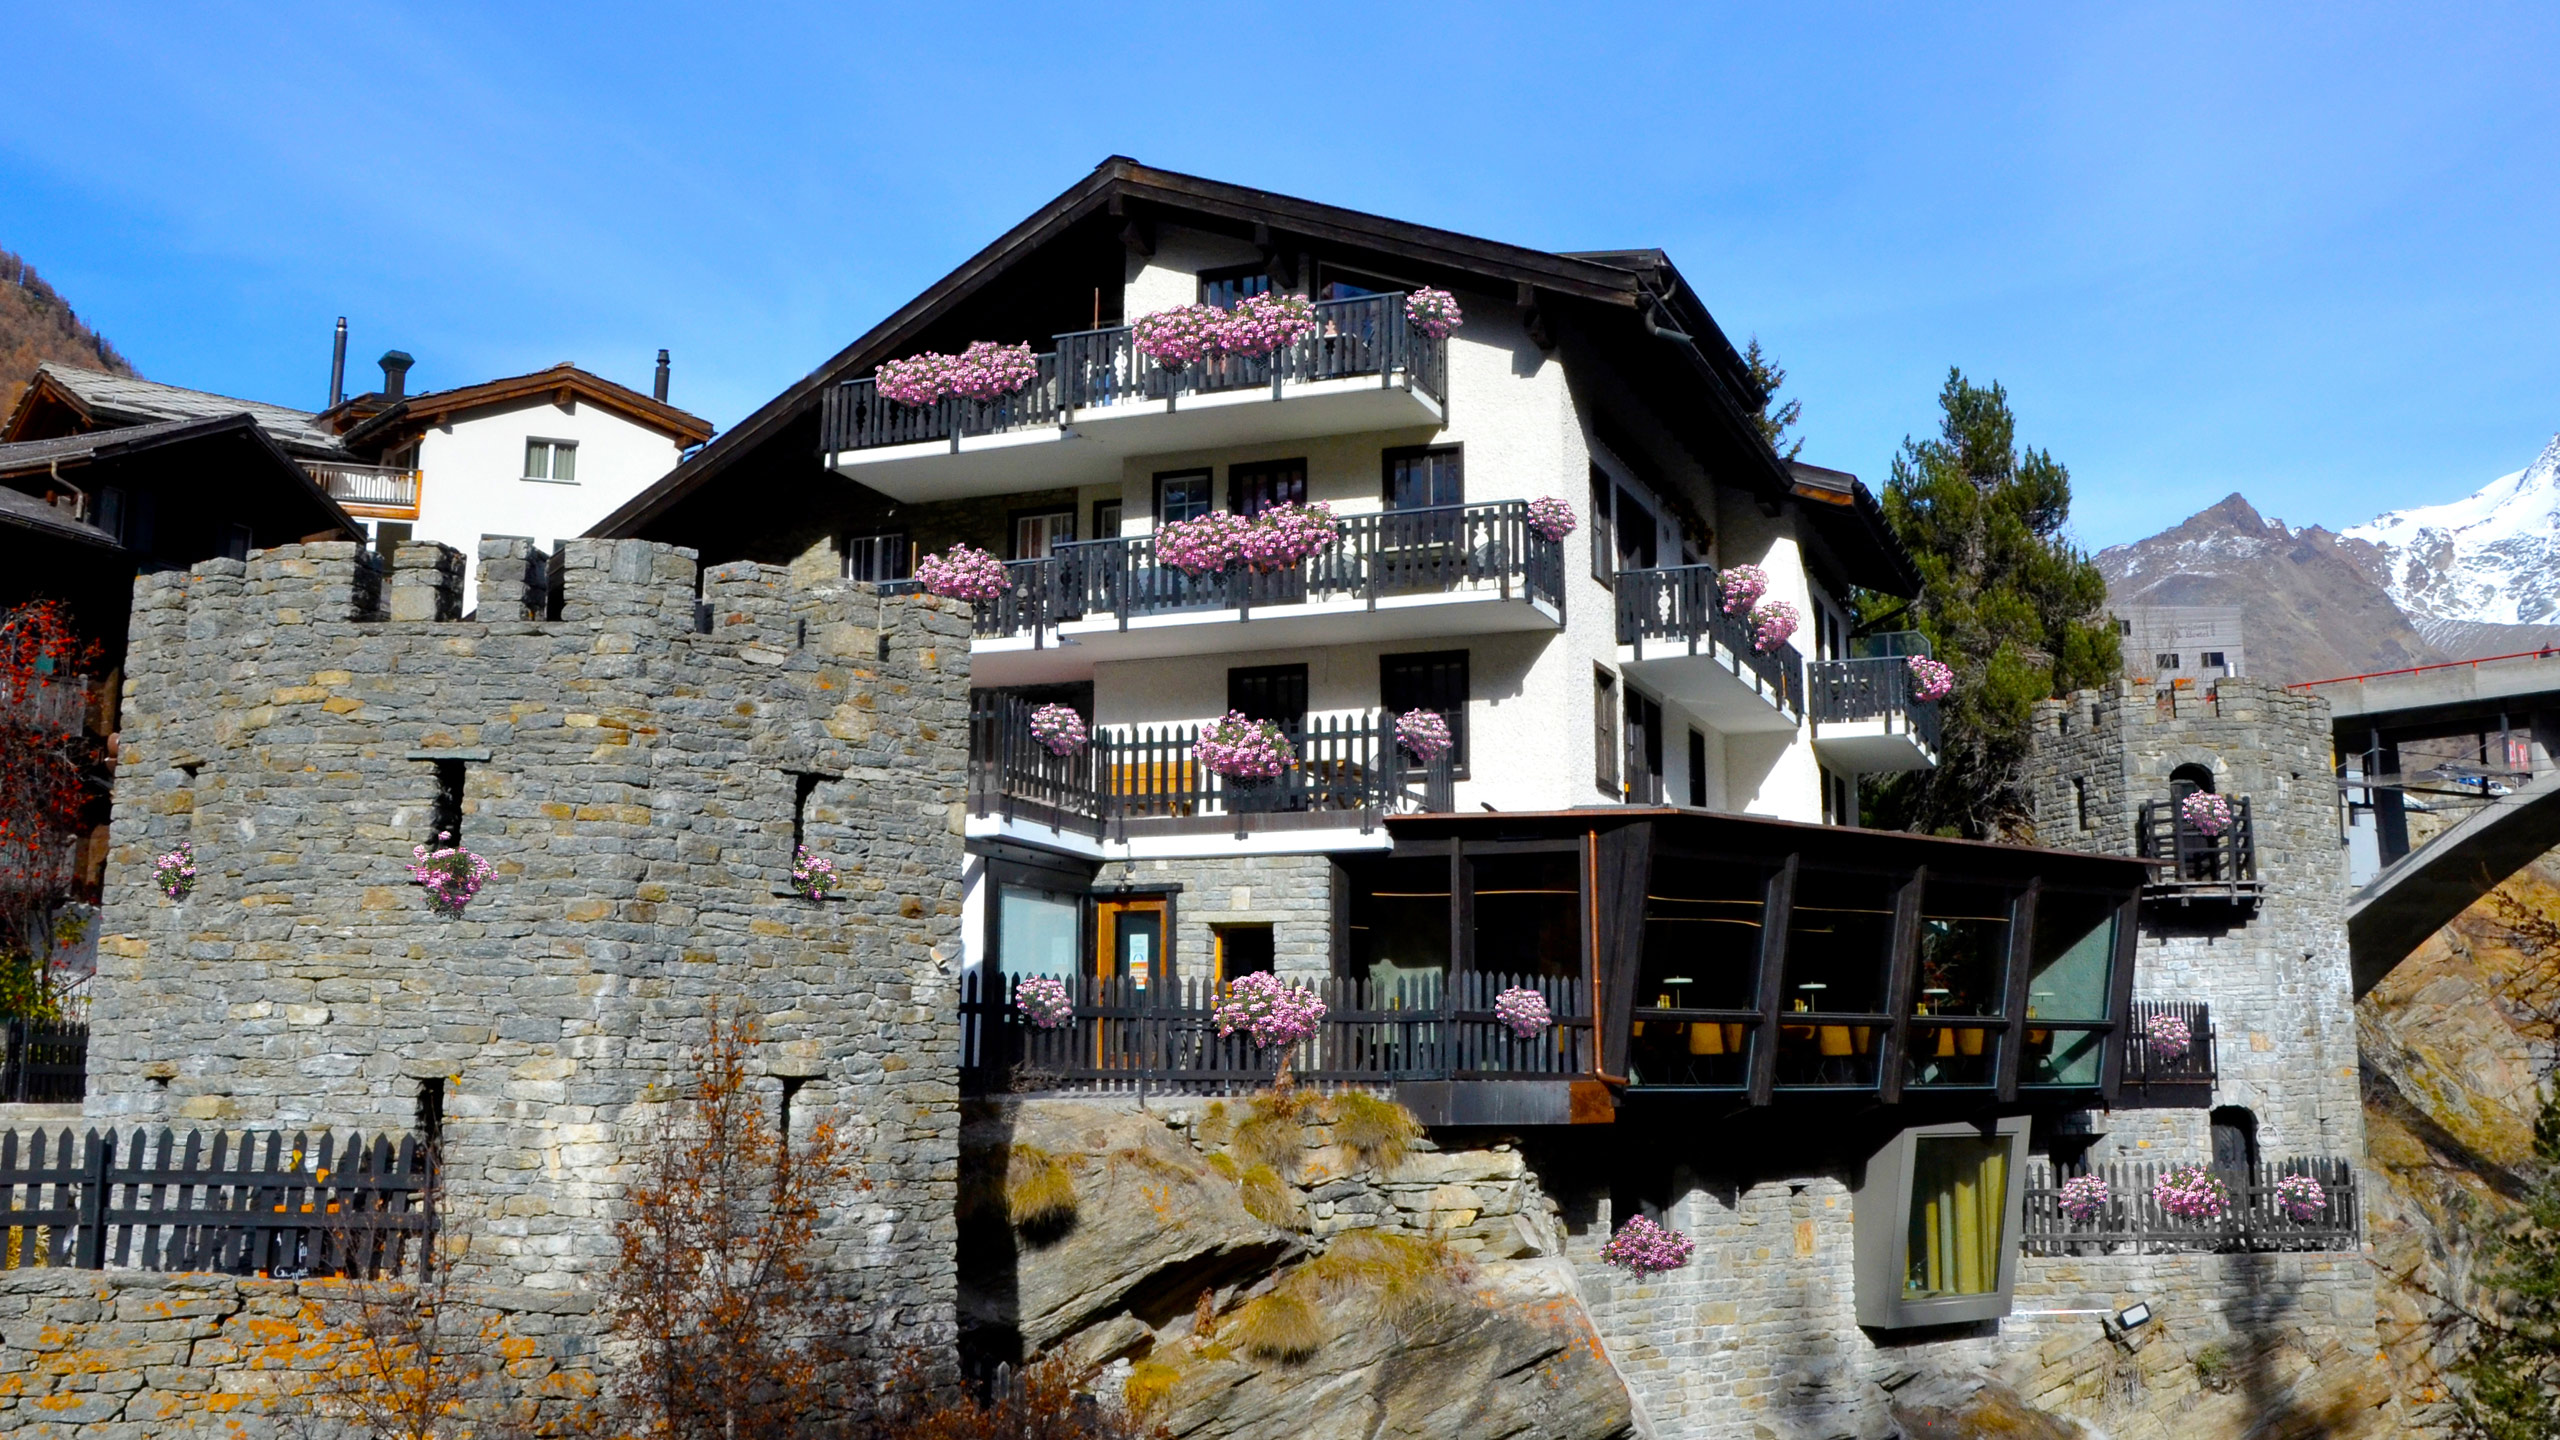 Fotos - Hotel La Gorge & Restaurant Zer Schlucht - 2